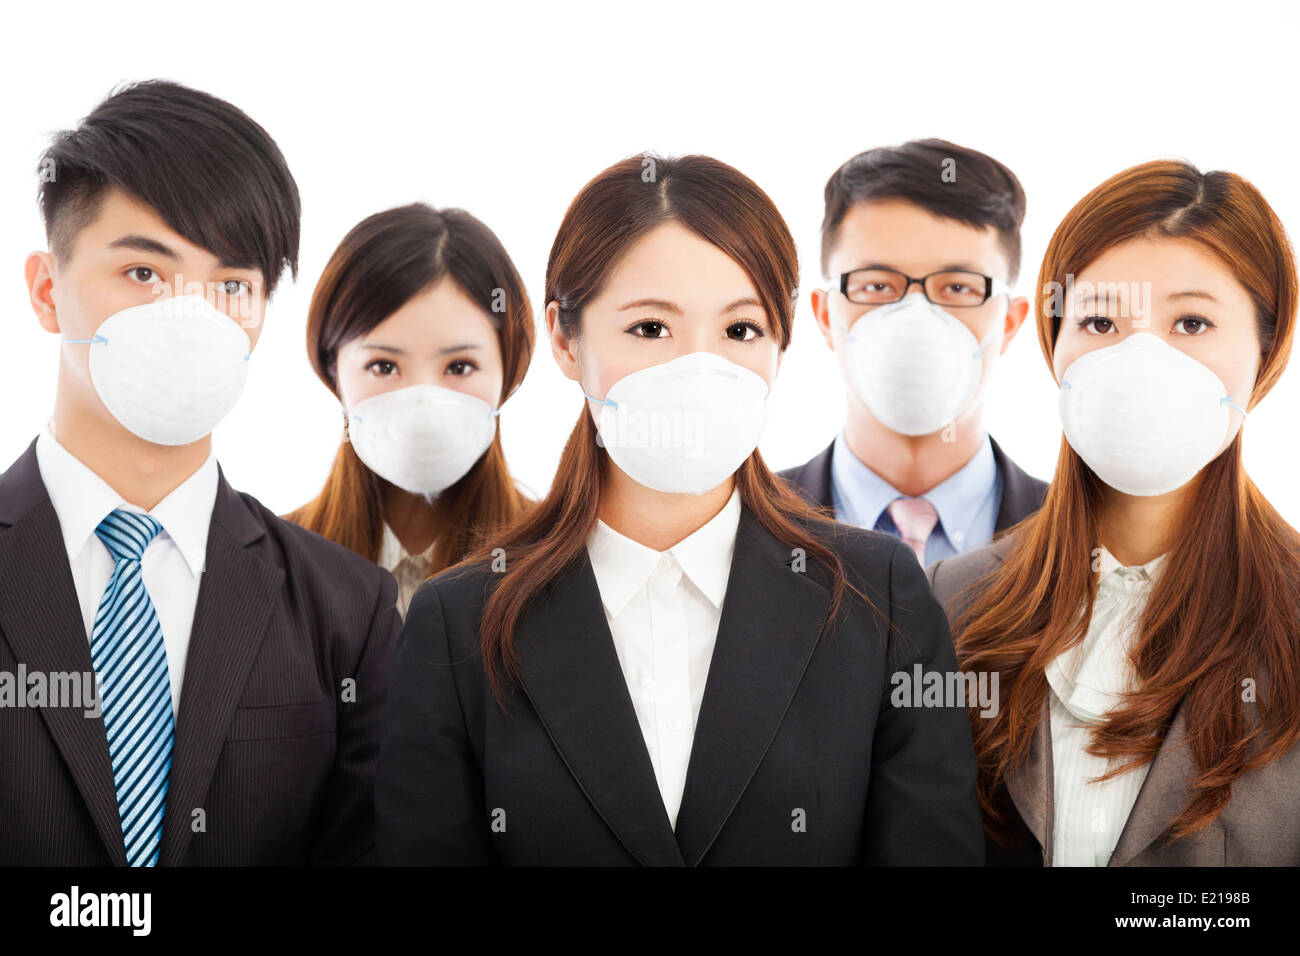 Les entreprises de personnes portant un masque d'exprimer des problèmes Banque D'Images